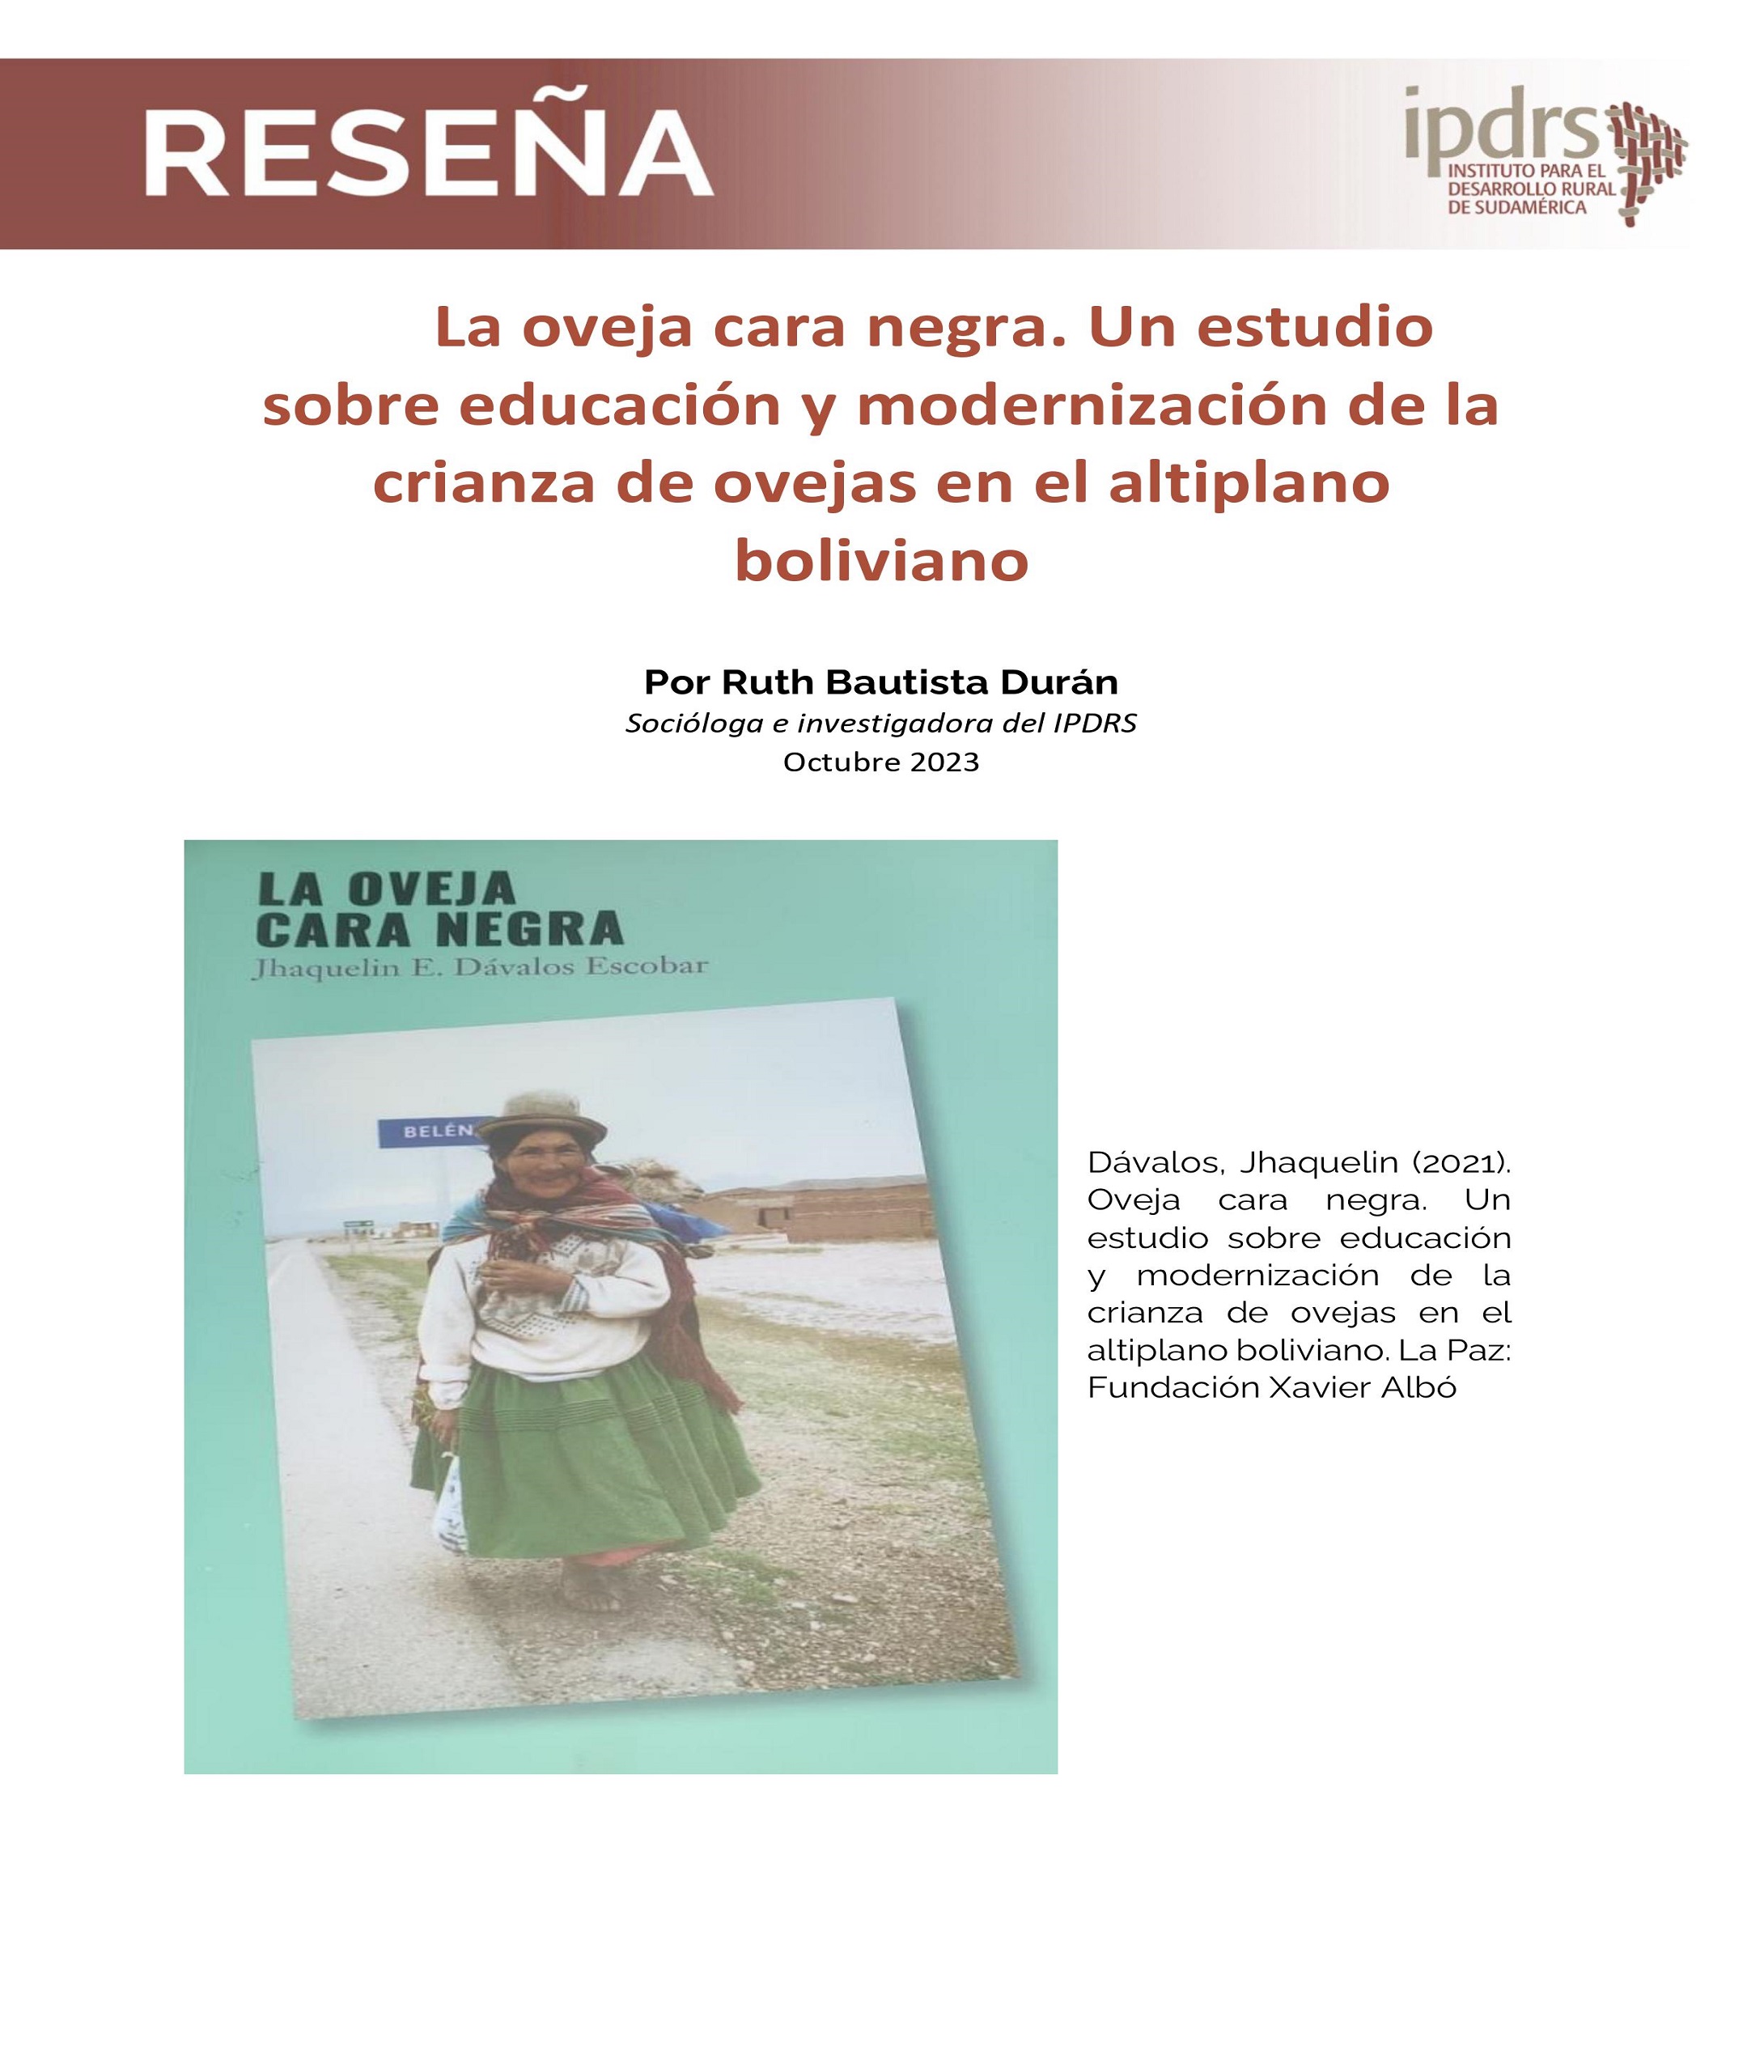 Reseña libro: La oveja cara negra, un estudio sobre la educación y modernización de la crianza de ovejas en el altiplano boliviano